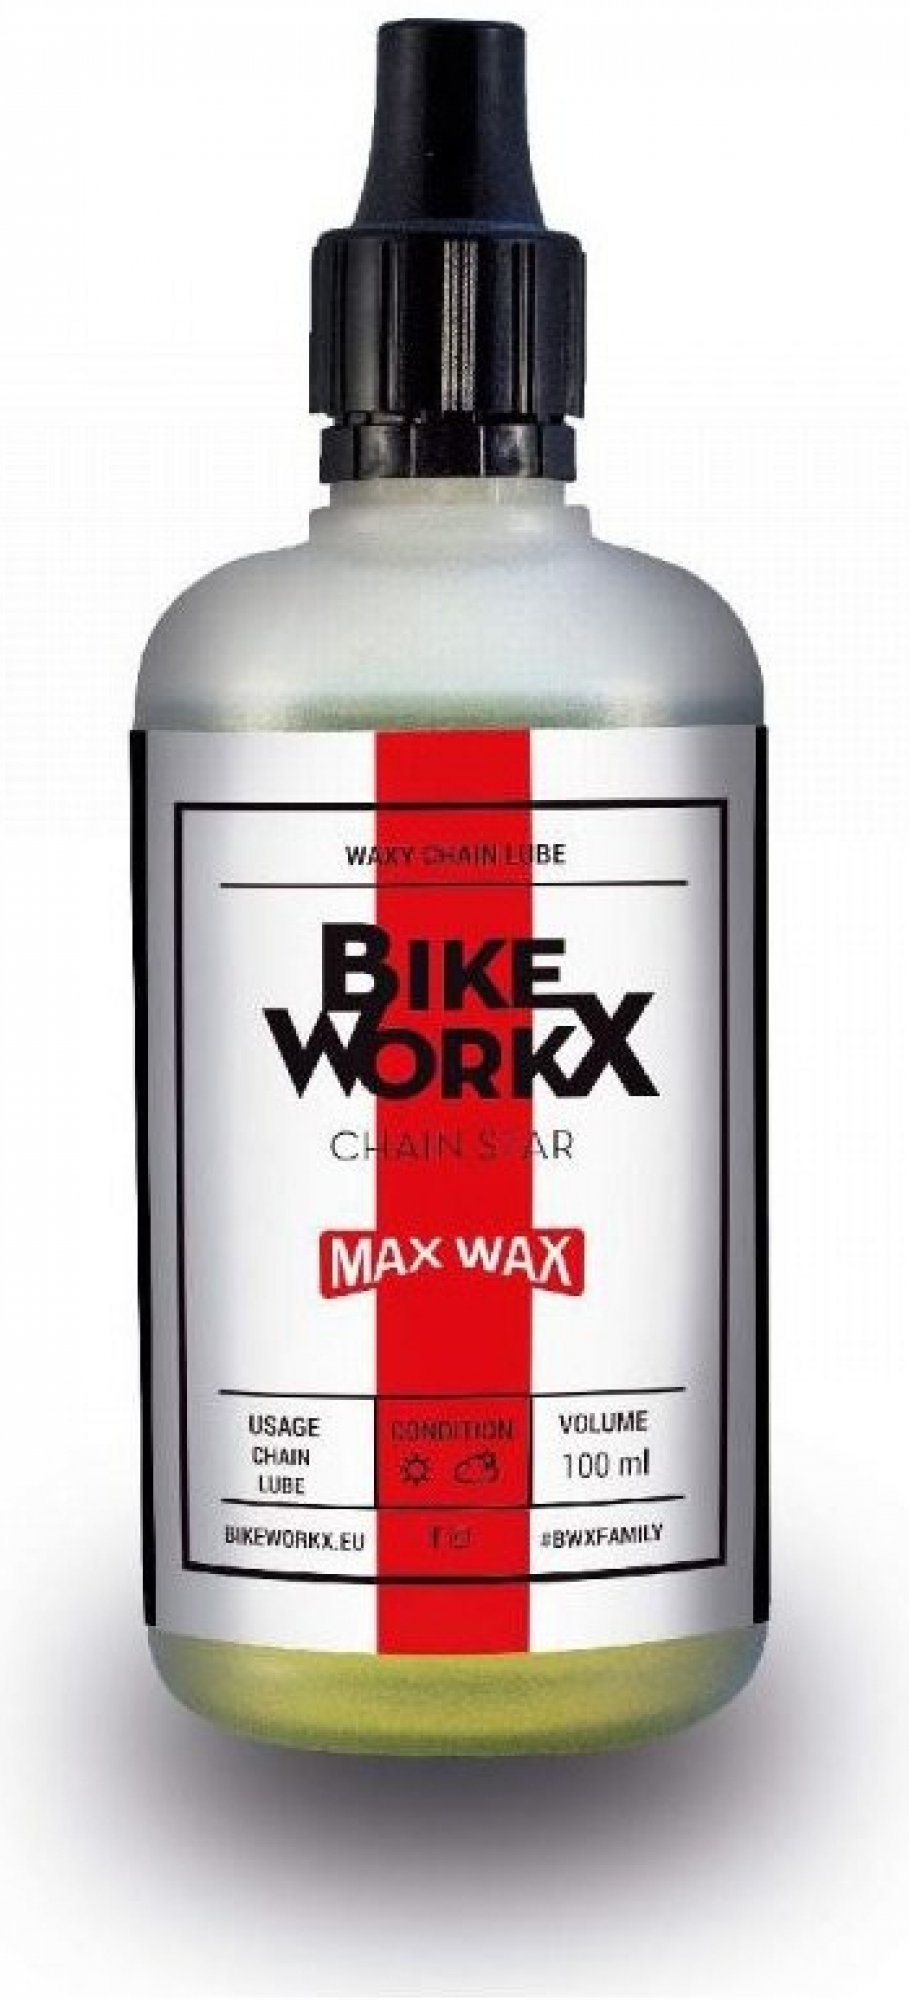 BIKEWORKX Chain Star MAX Wax - 100 ml